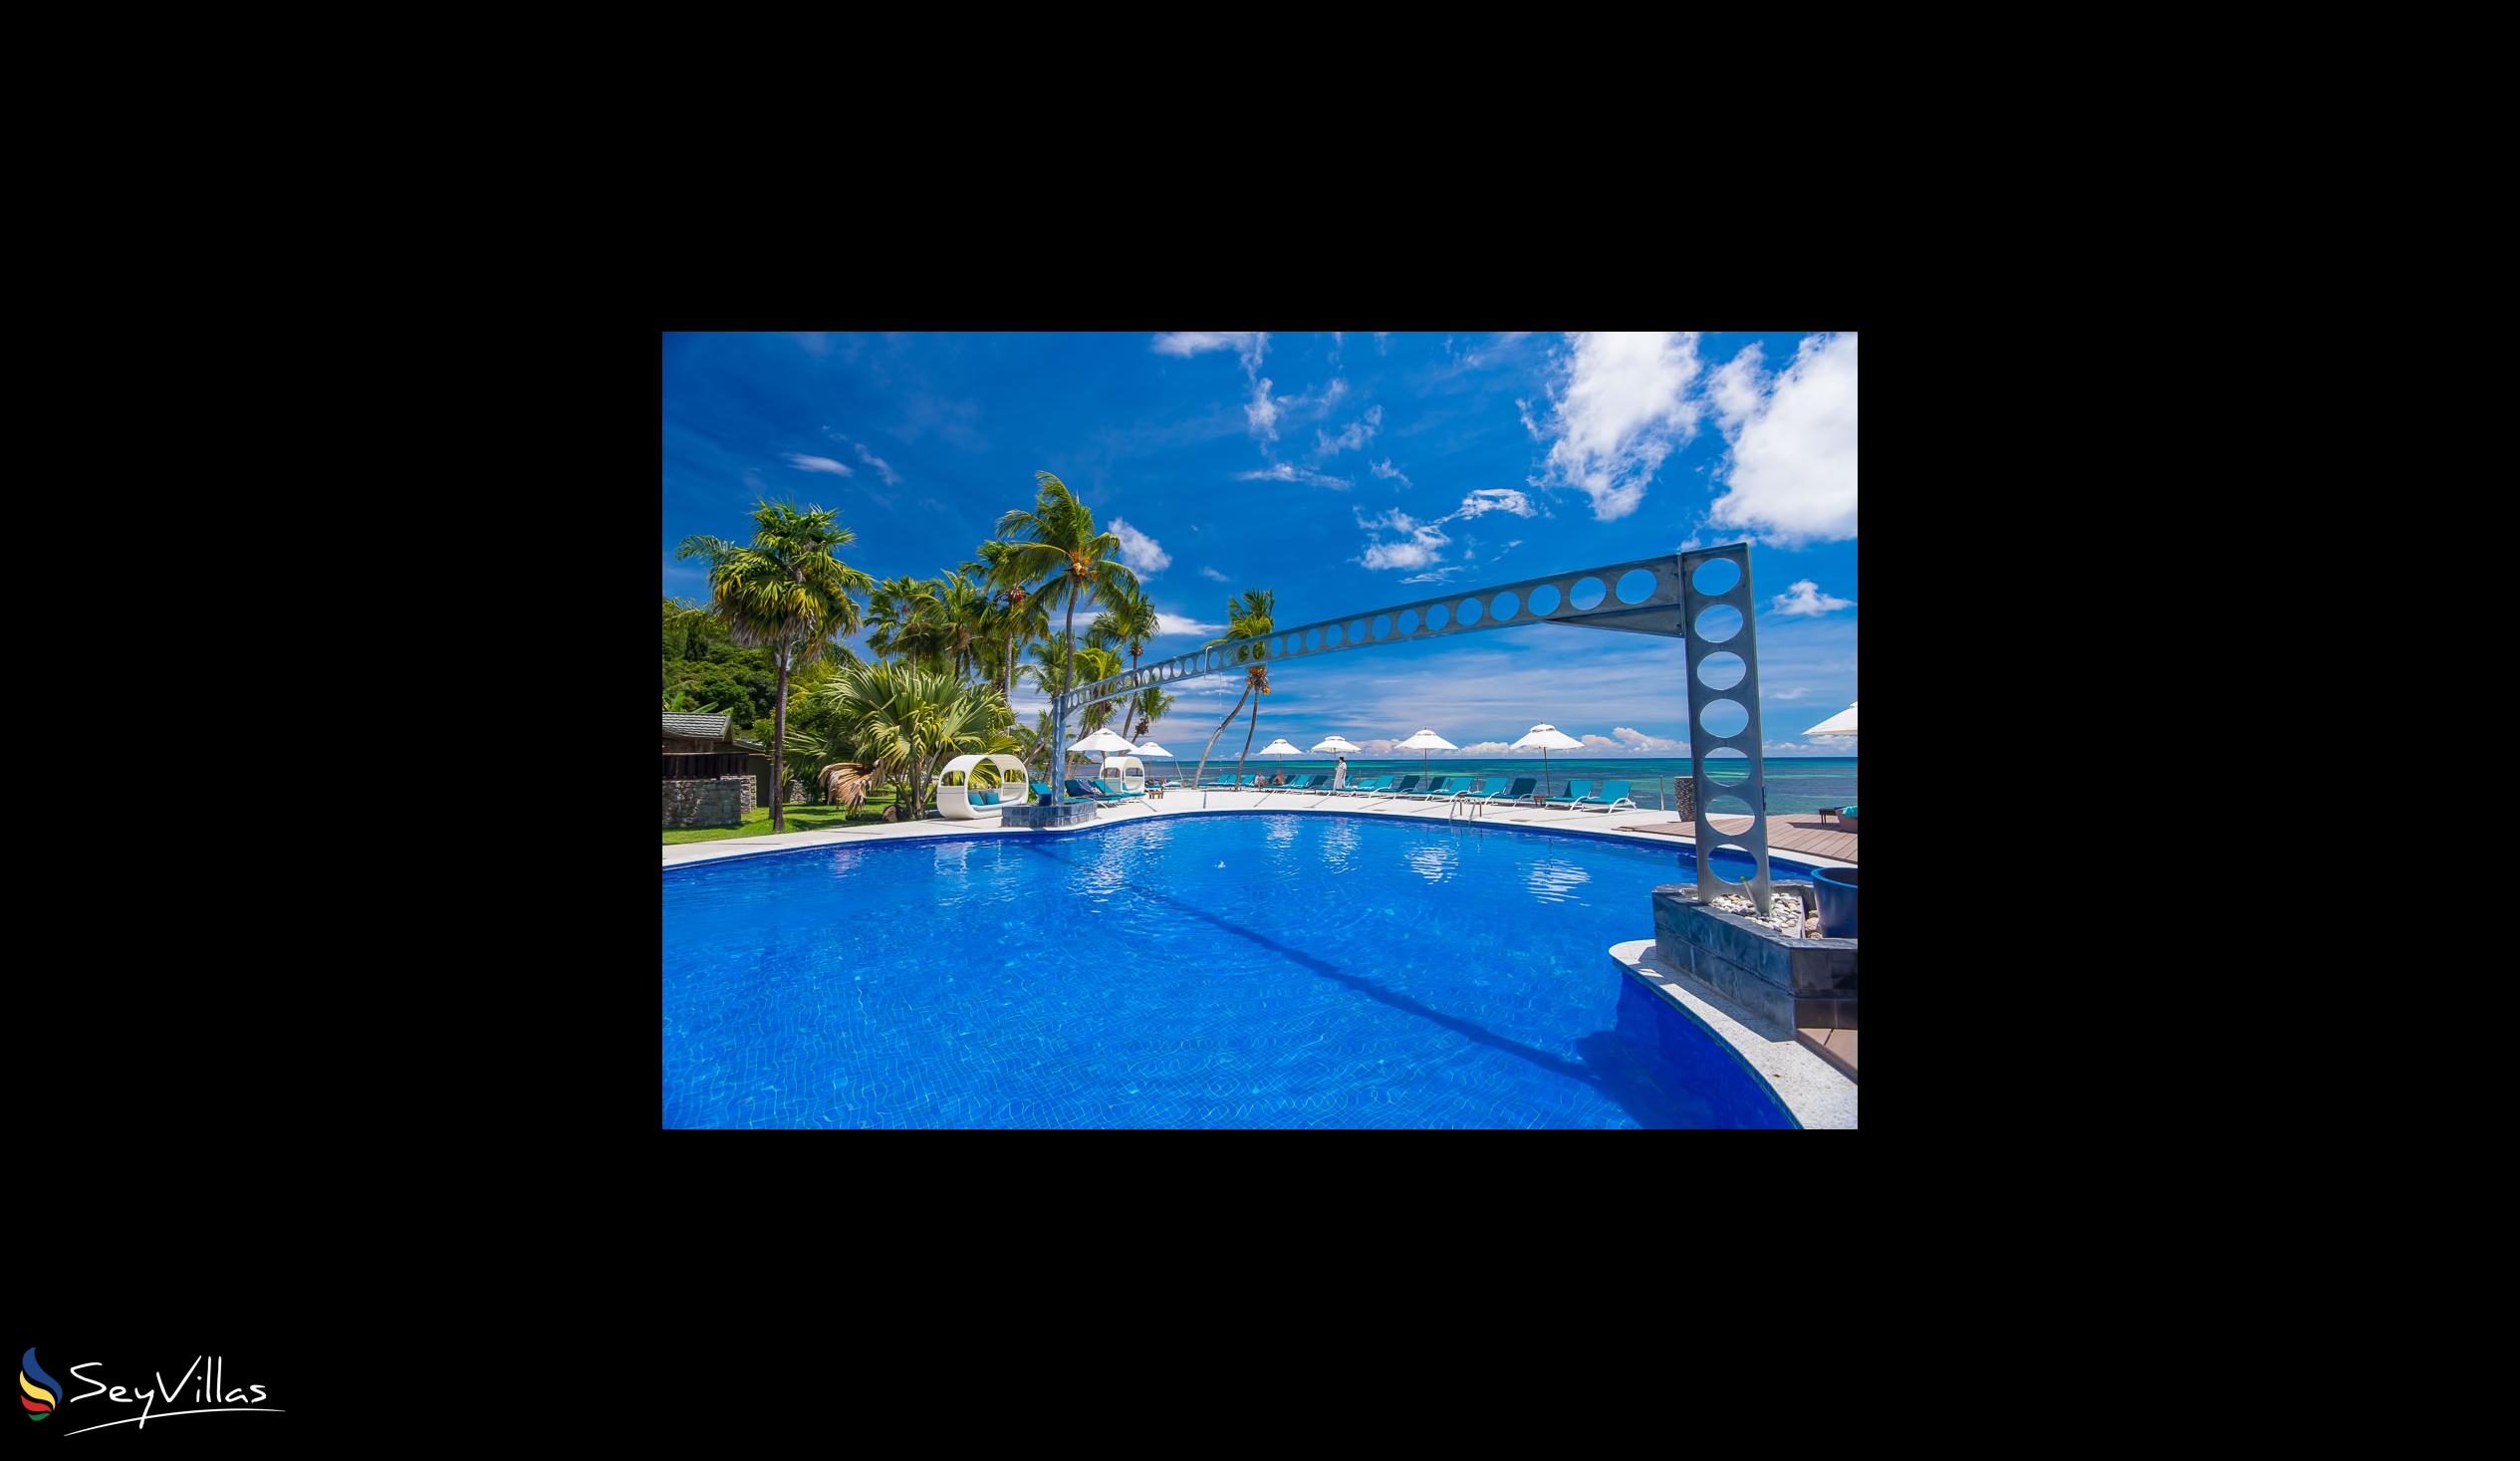 Foto 17: Coco de Mer & Black Parrot Suites - Aussenbereich - Praslin (Seychellen)